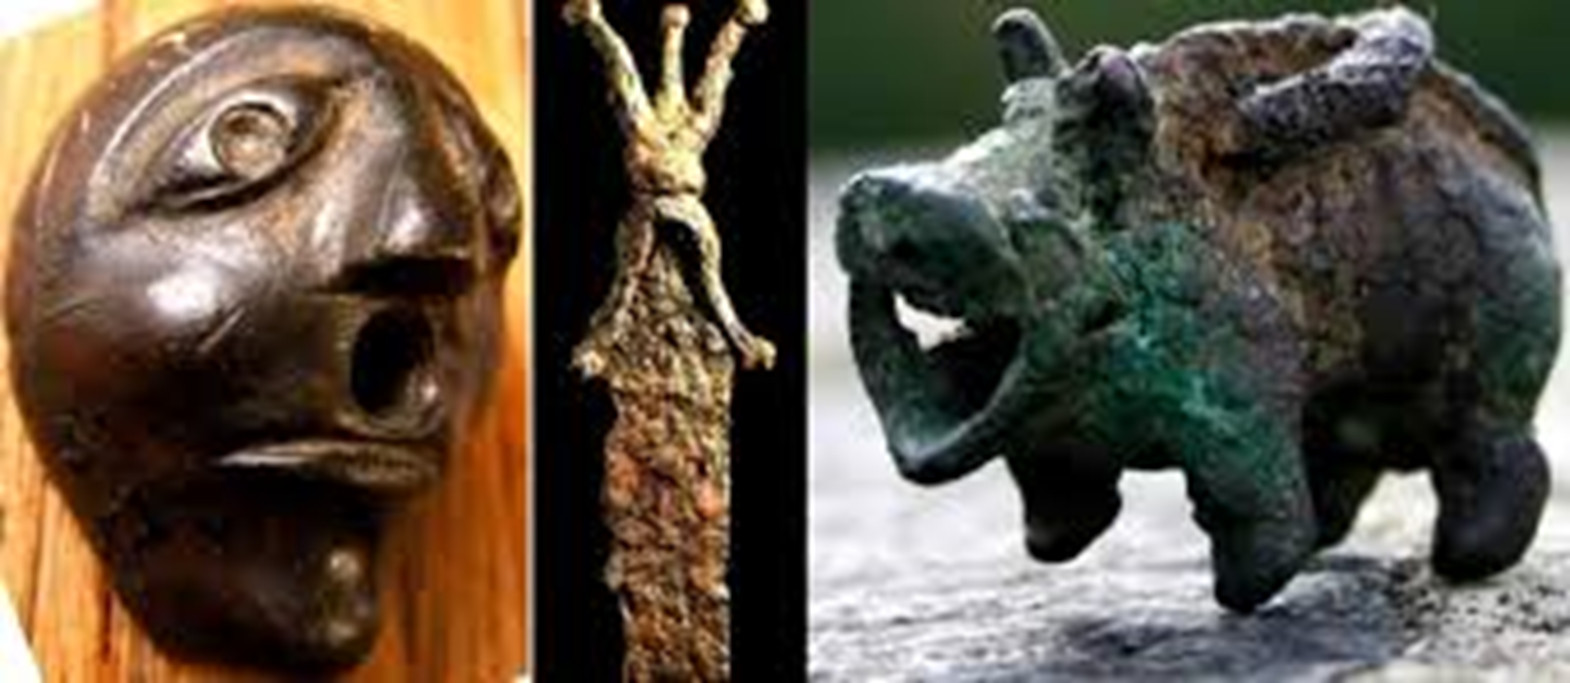 Obr.2. Vlevo: bronzová „maska“ z obce Pekari, Čerkaská oblast. Uprostřed: mečík z lokality Hališ-Lovačka nedaleko Mukačeva, Zakarpatská oblast. Vpravo: bronzový kančík z lokality Mala Byjhaň, Zakarpatská oblast.